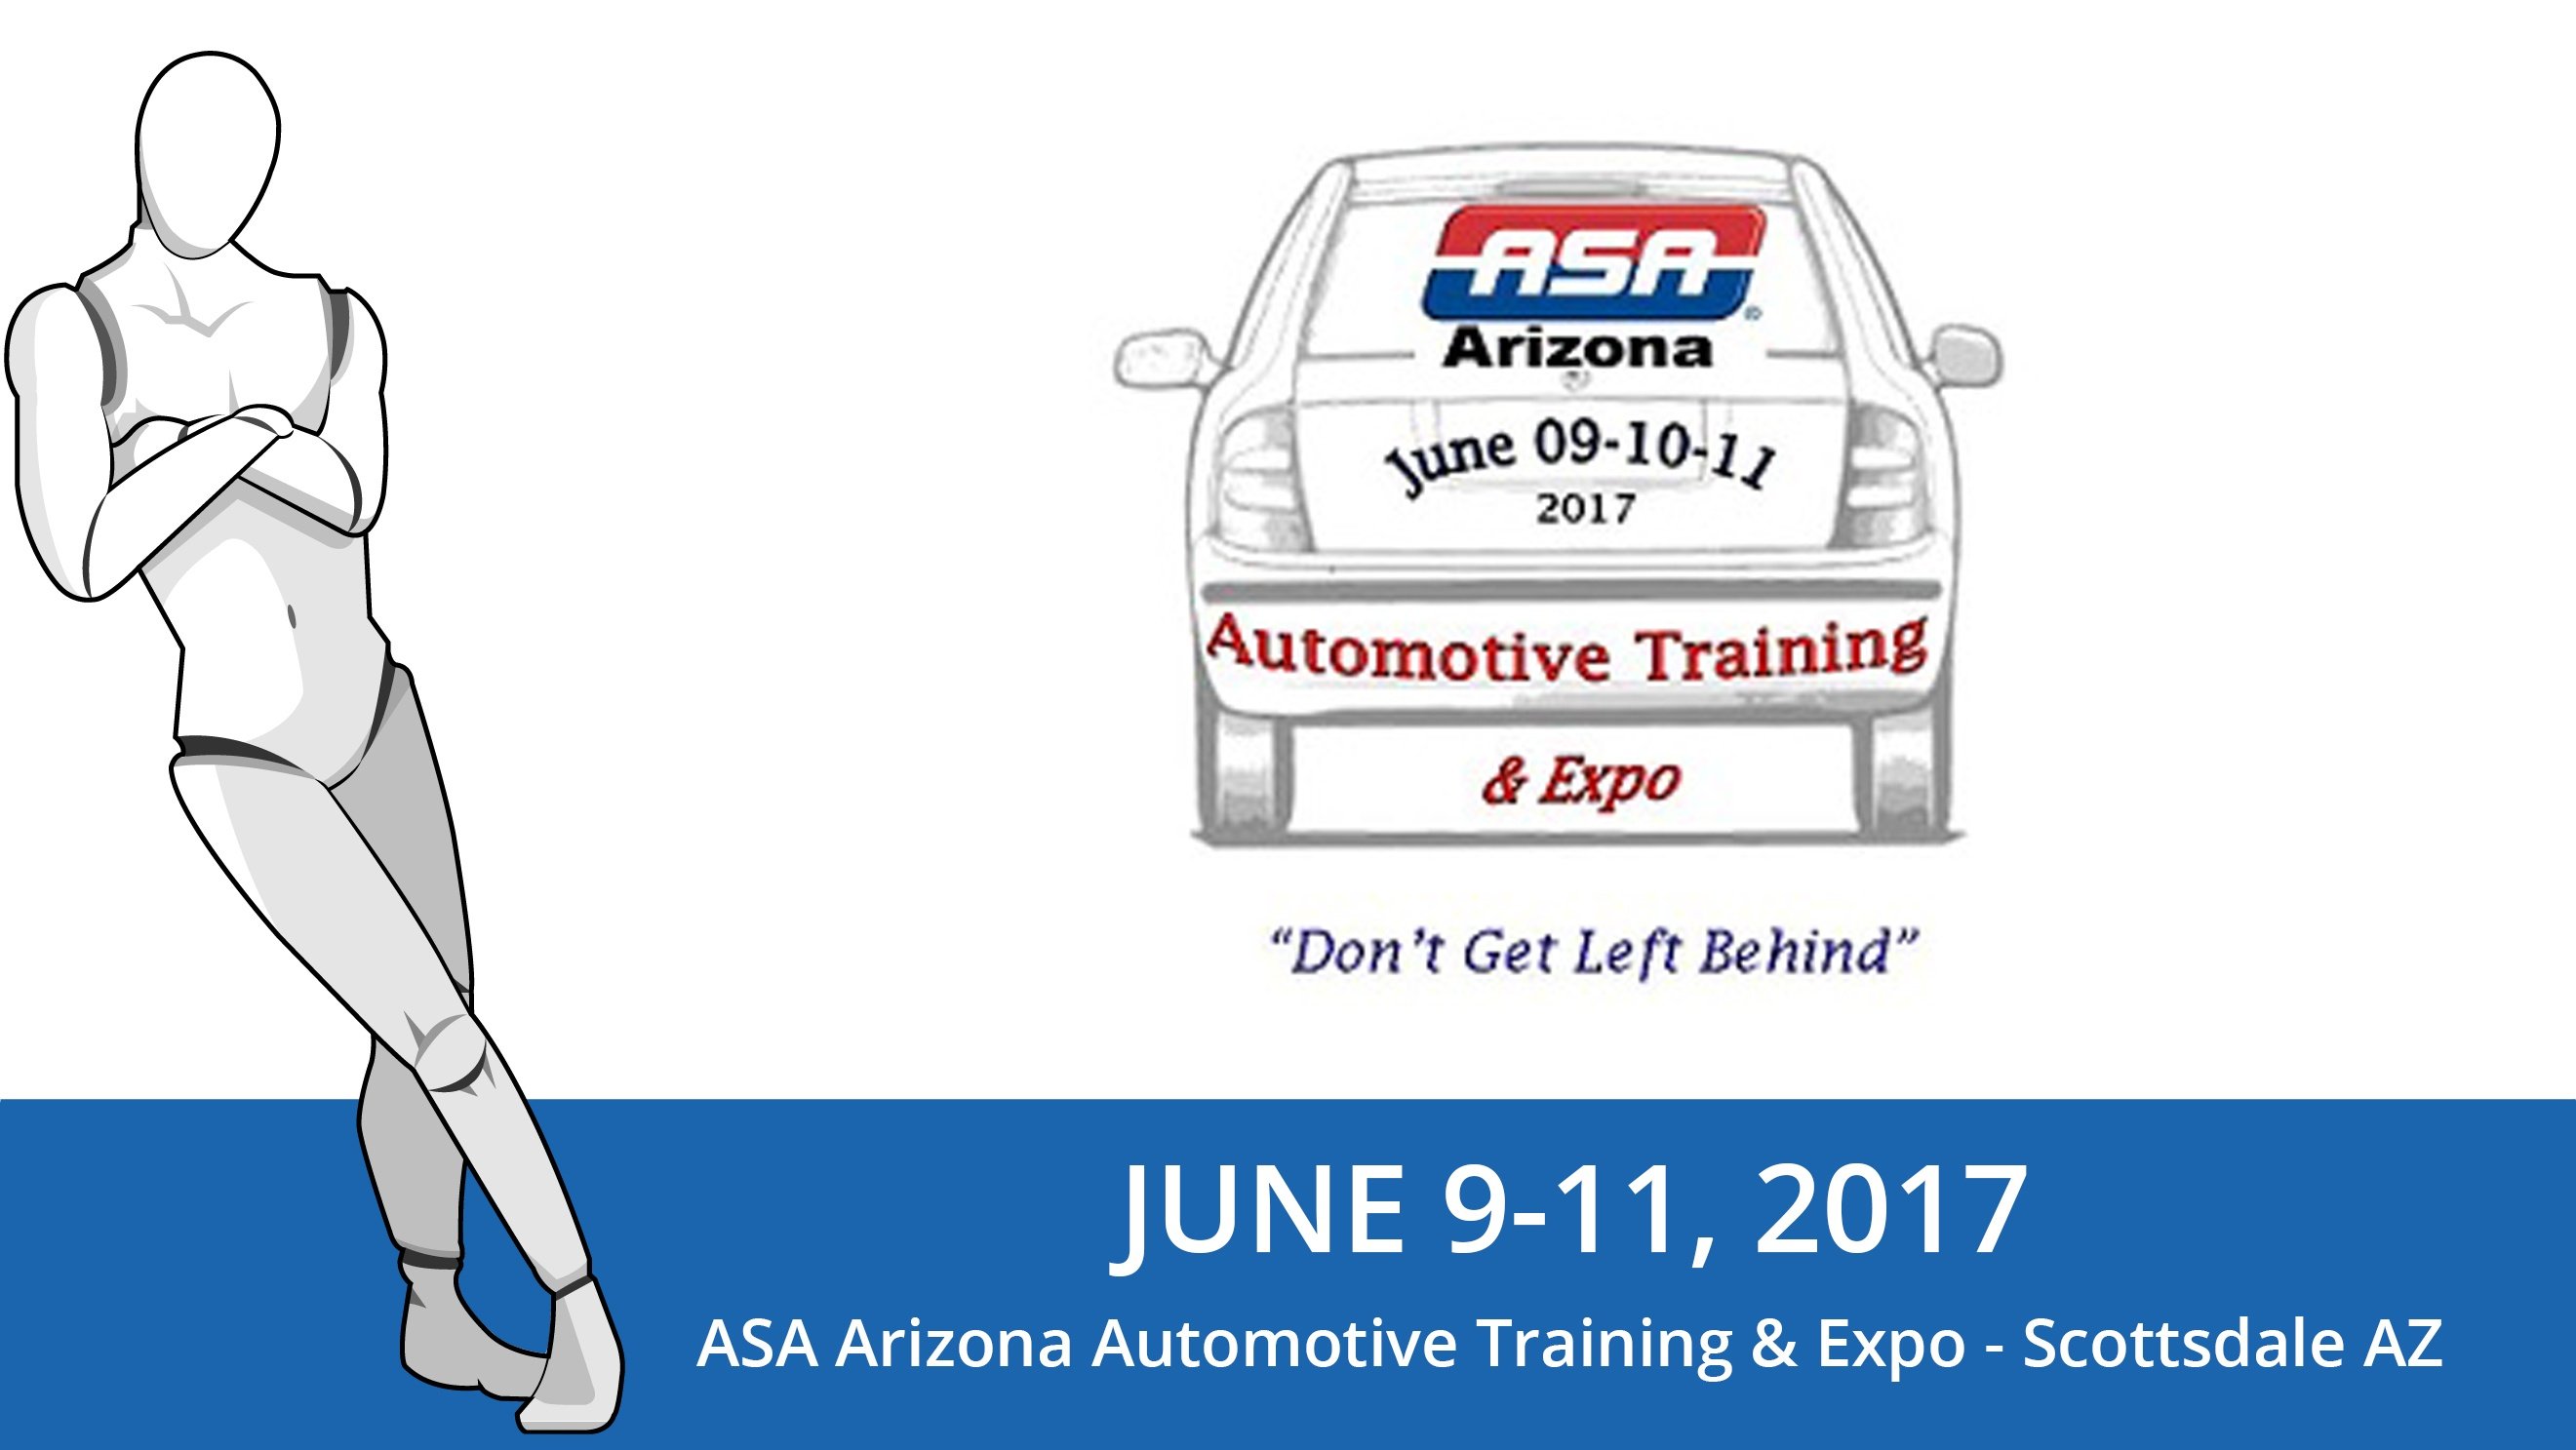 ASA Automotive Training & Expo